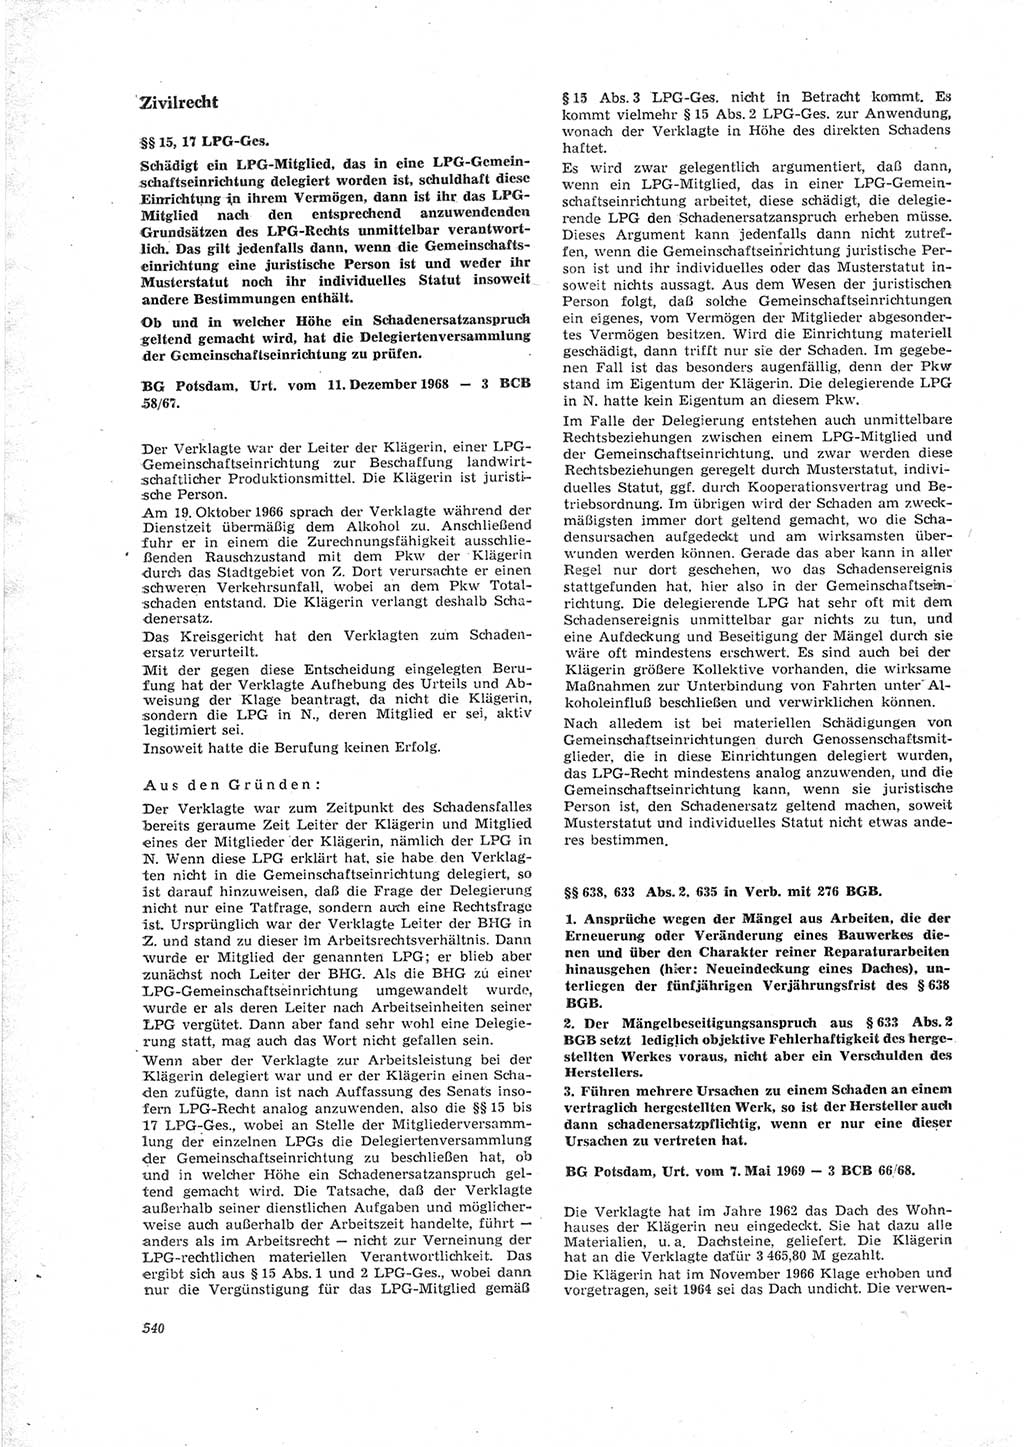 Neue Justiz (NJ), Zeitschrift für Recht und Rechtswissenschaft [Deutsche Demokratische Republik (DDR)], 23. Jahrgang 1969, Seite 540 (NJ DDR 1969, S. 540)